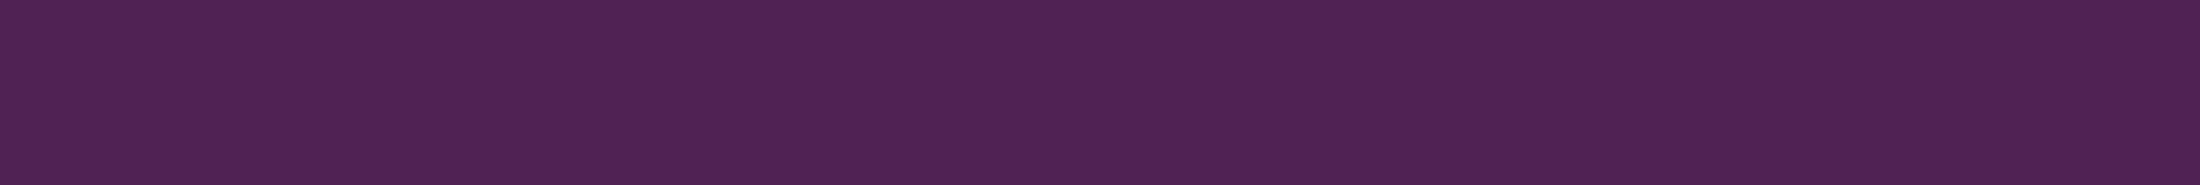 Bandeau fond violet